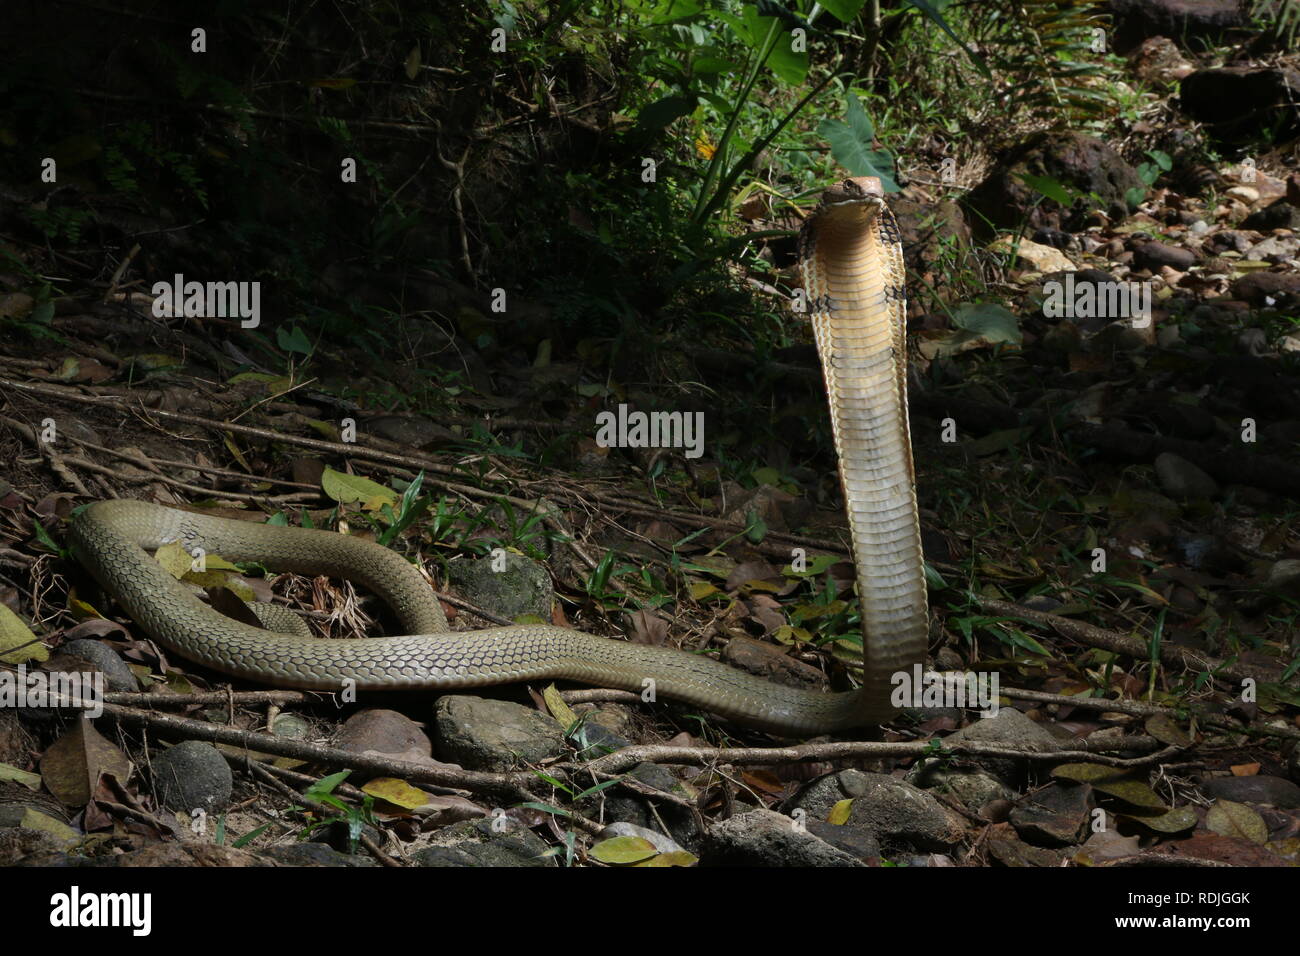 Cobra reale (Ophiophagus hannah), è un serpente velenoso specie nella famiglia Elapidae, endemica di foreste da India attraverso il sud-est asiatico Foto Stock